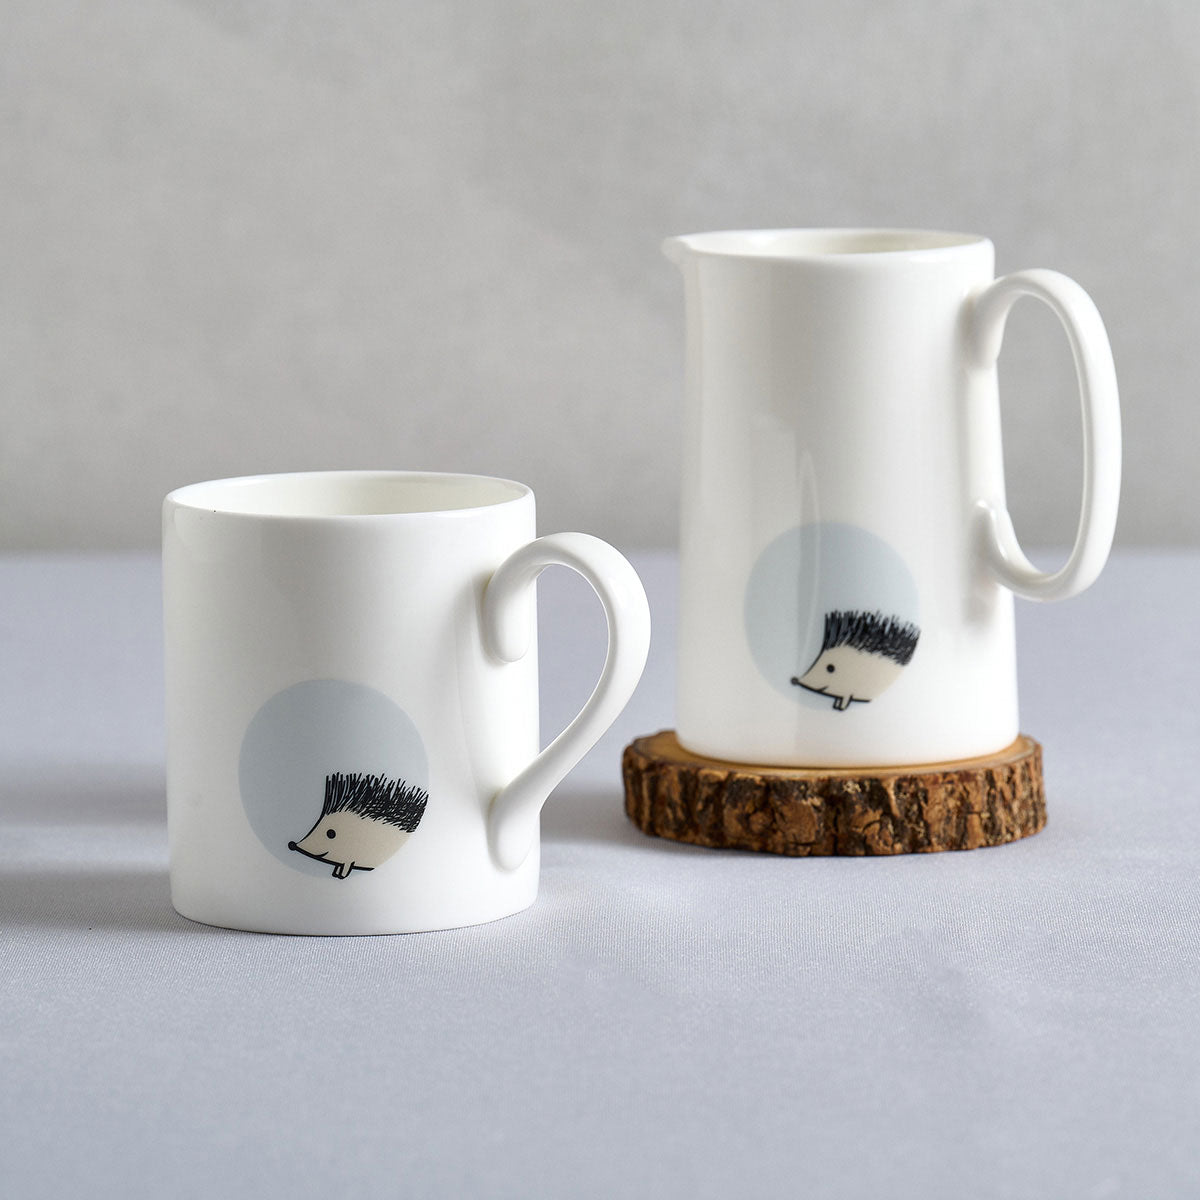 Hedgehog Mug and Jug by Jin Designs